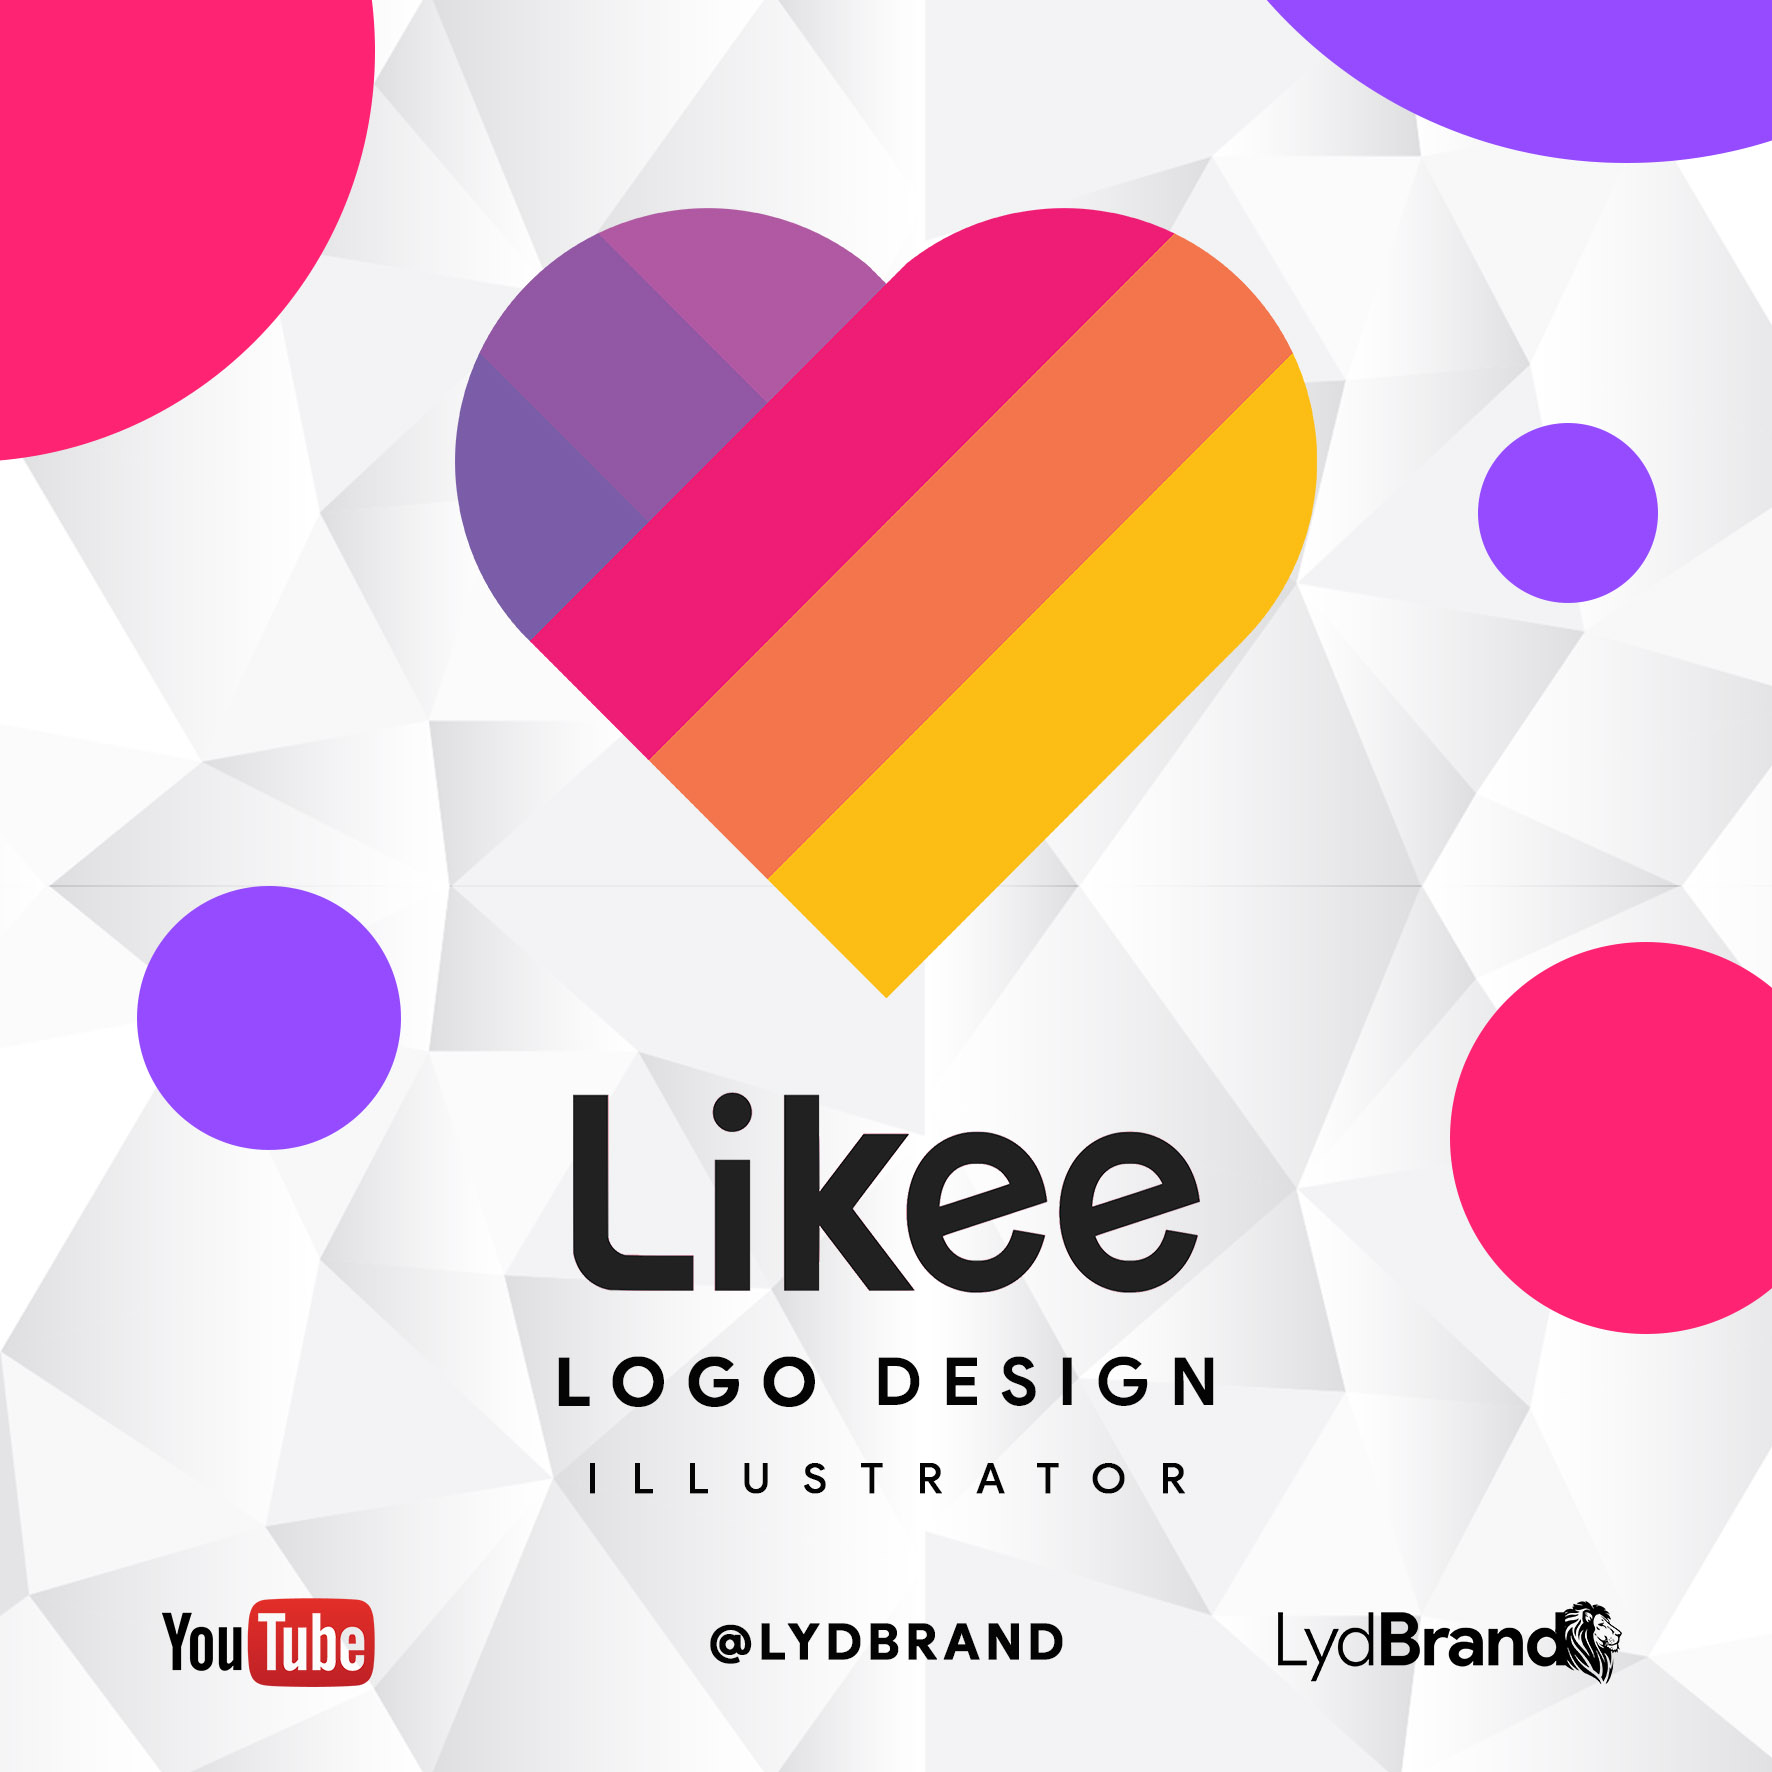 Go live how. Likee логотип. Likee лого. Likee logo. Likee logo 3d.